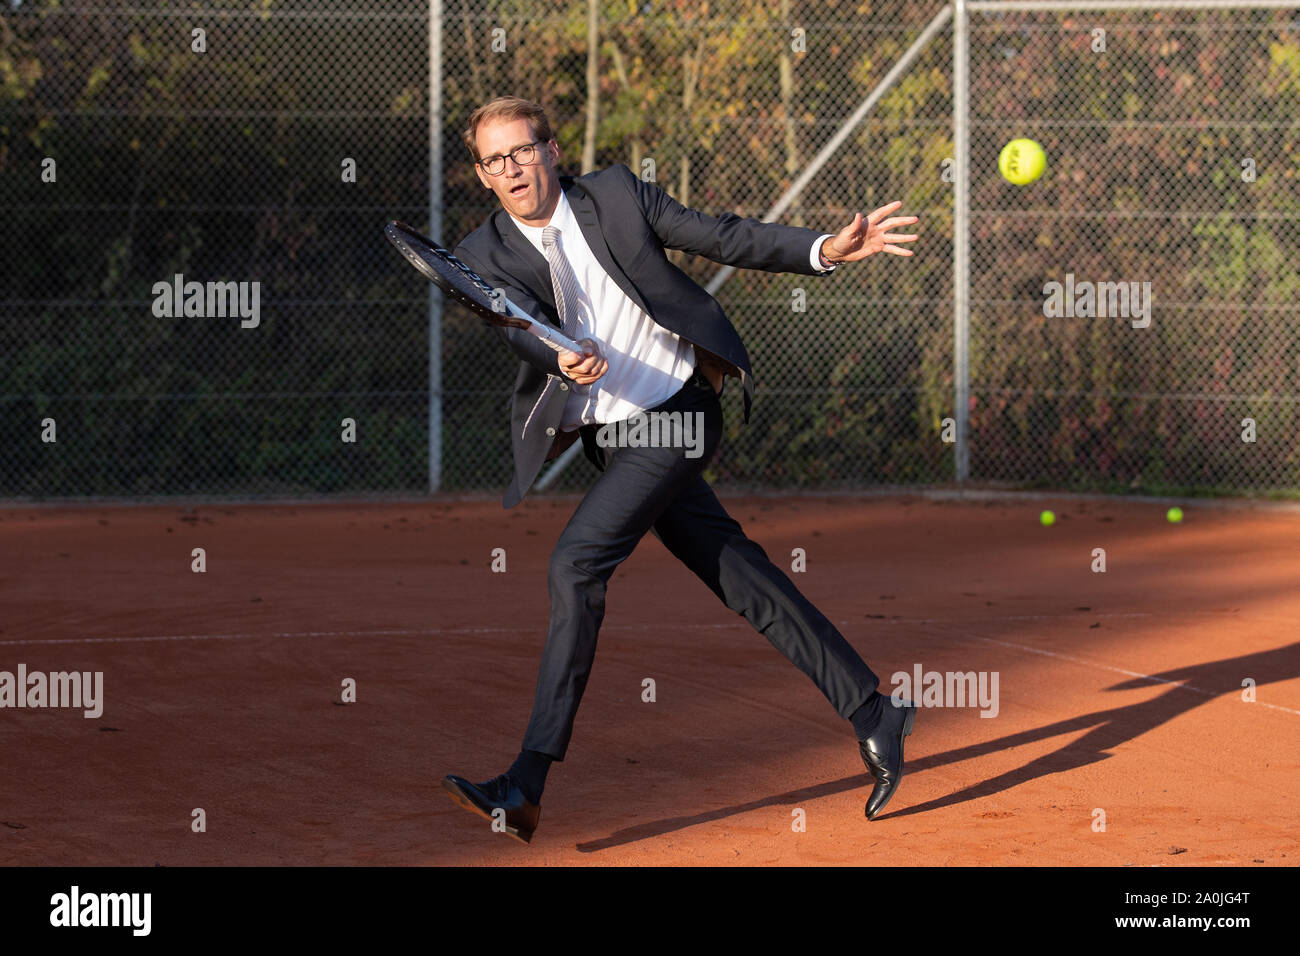 Unternehmer im dunklen Anzug Tennis spielen Stockfoto